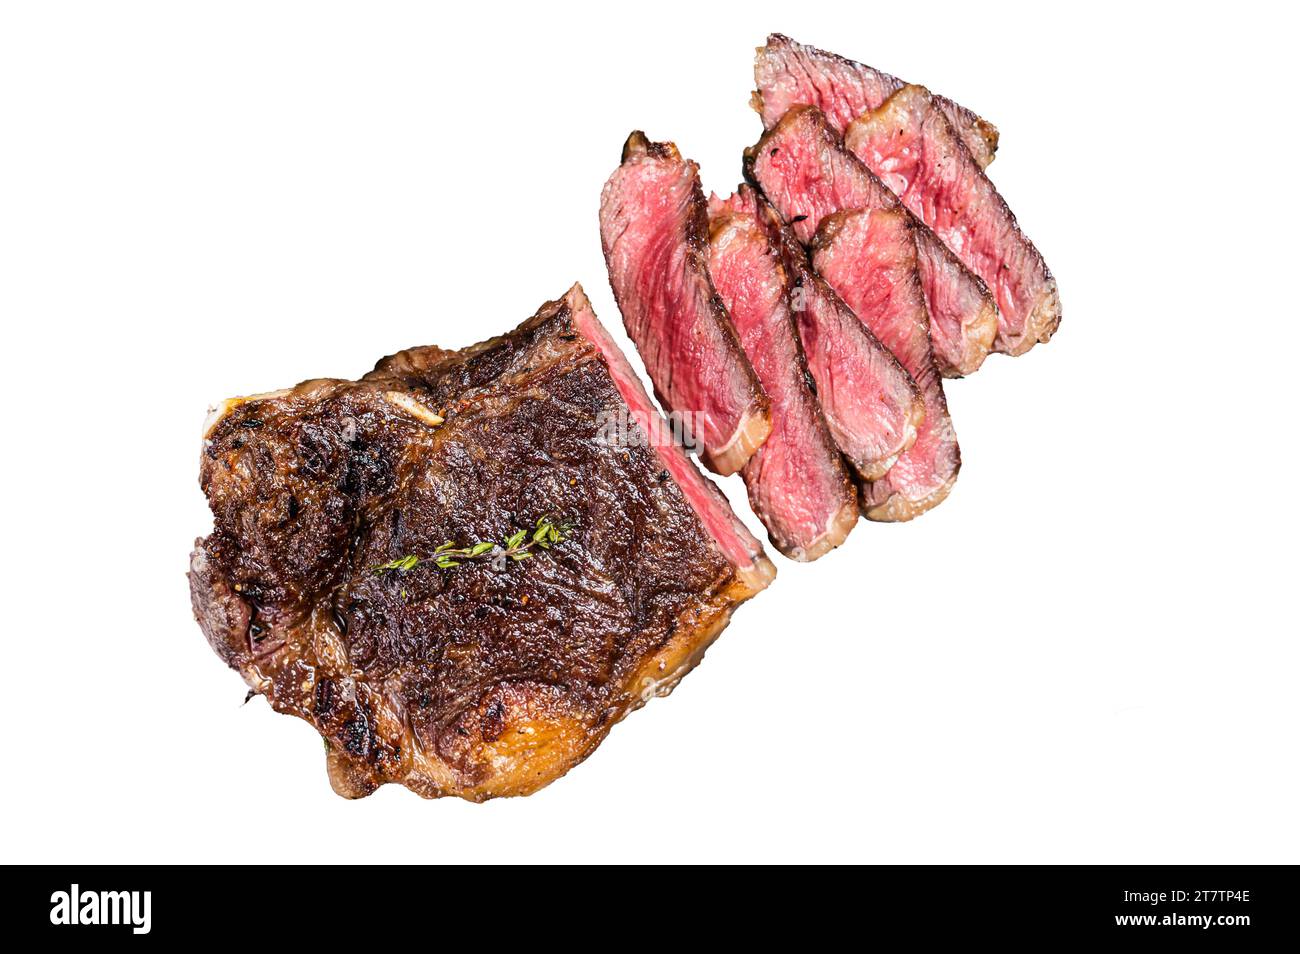 Steak de viande de bœuf striploin Wagyu grillé ou steak New york sur un plateau en acier Isolé, fond blanc Banque D'Images